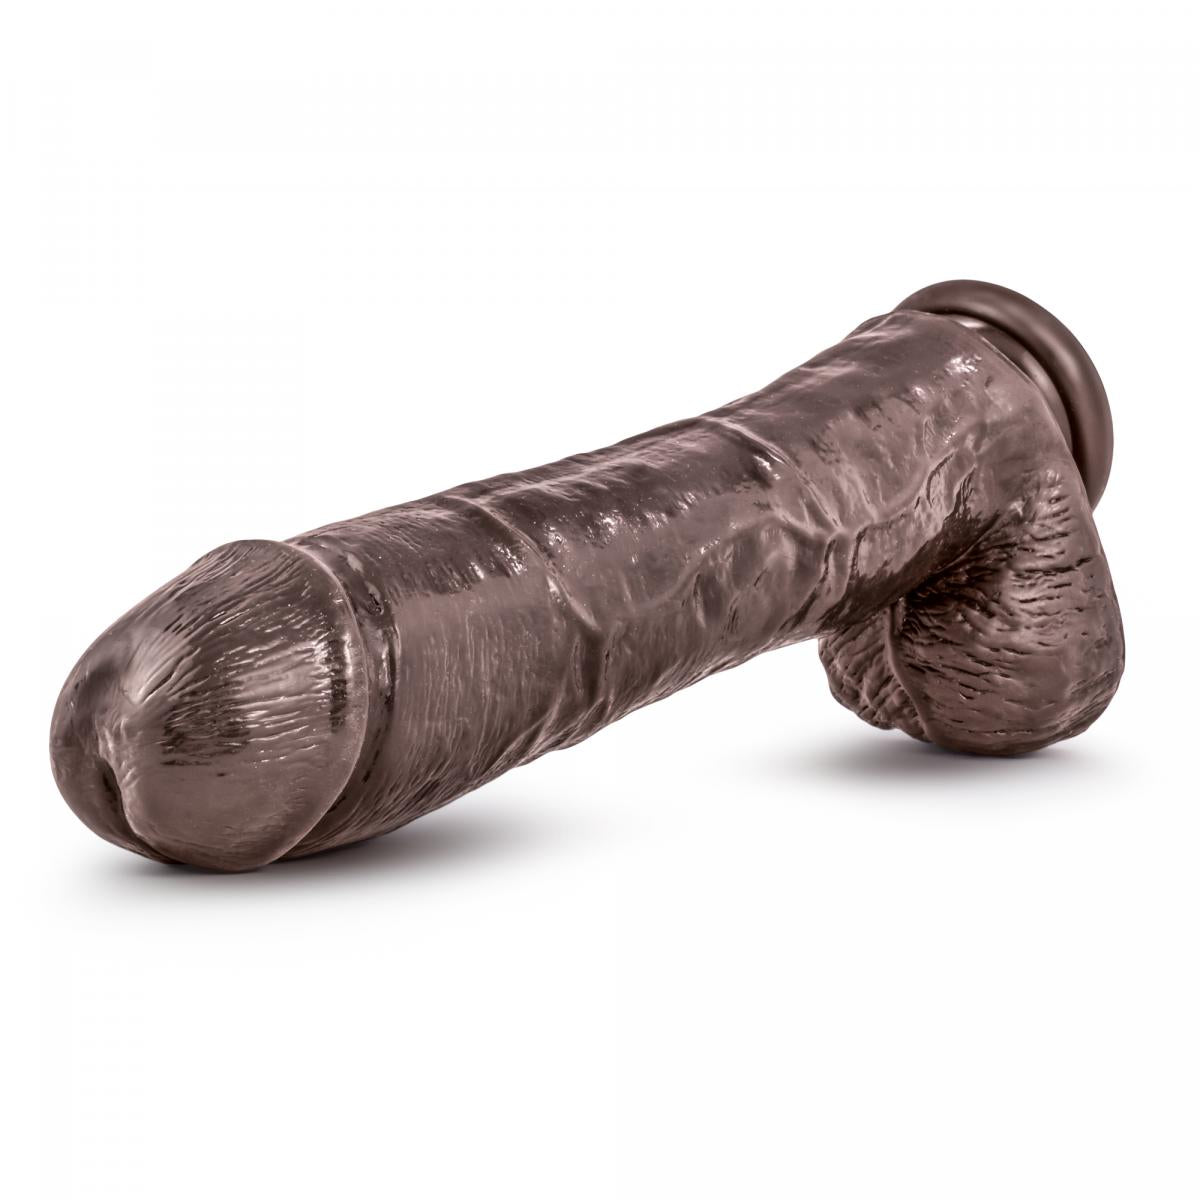 Zeer grote, realistische bruine xxxxl dildo van 33 cm van het merk Dr. Skin. Perfect voor gay mannen en te koop bij Flavourez.